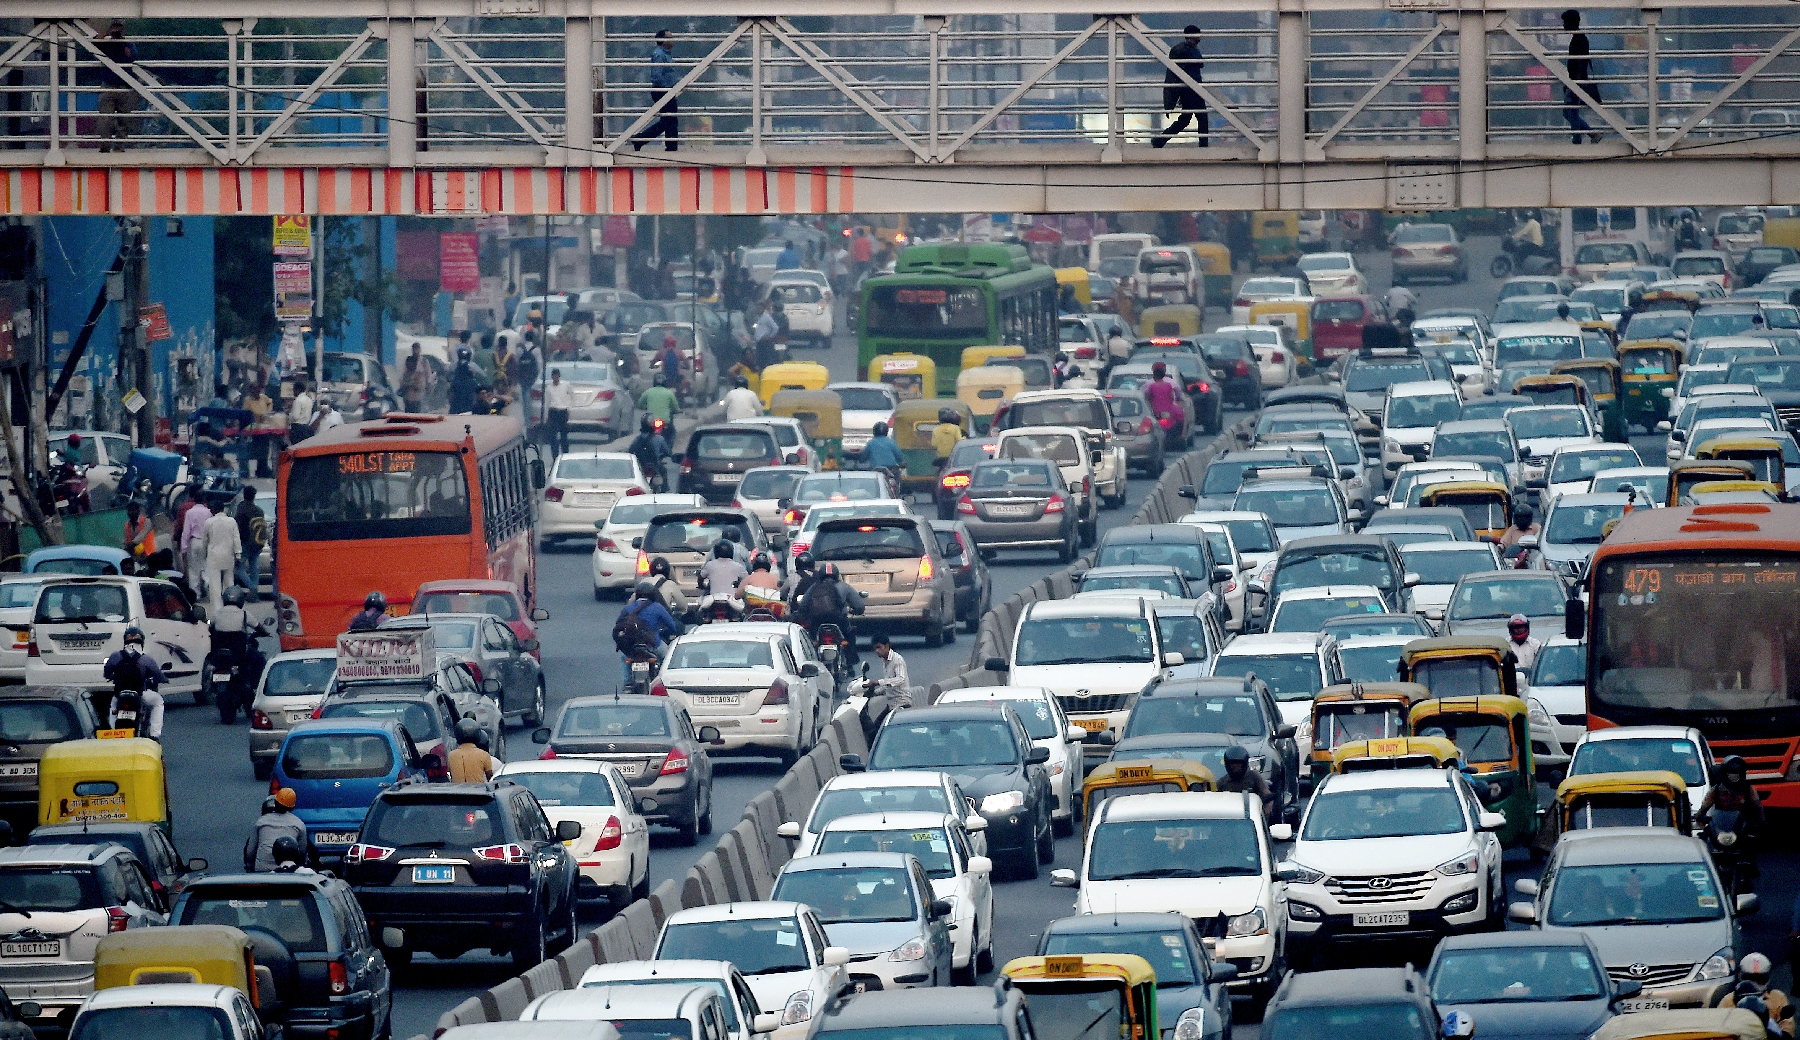 Inde-Pollution: La Cour suprême interdit la circulation de voitures diesel à New Delhi